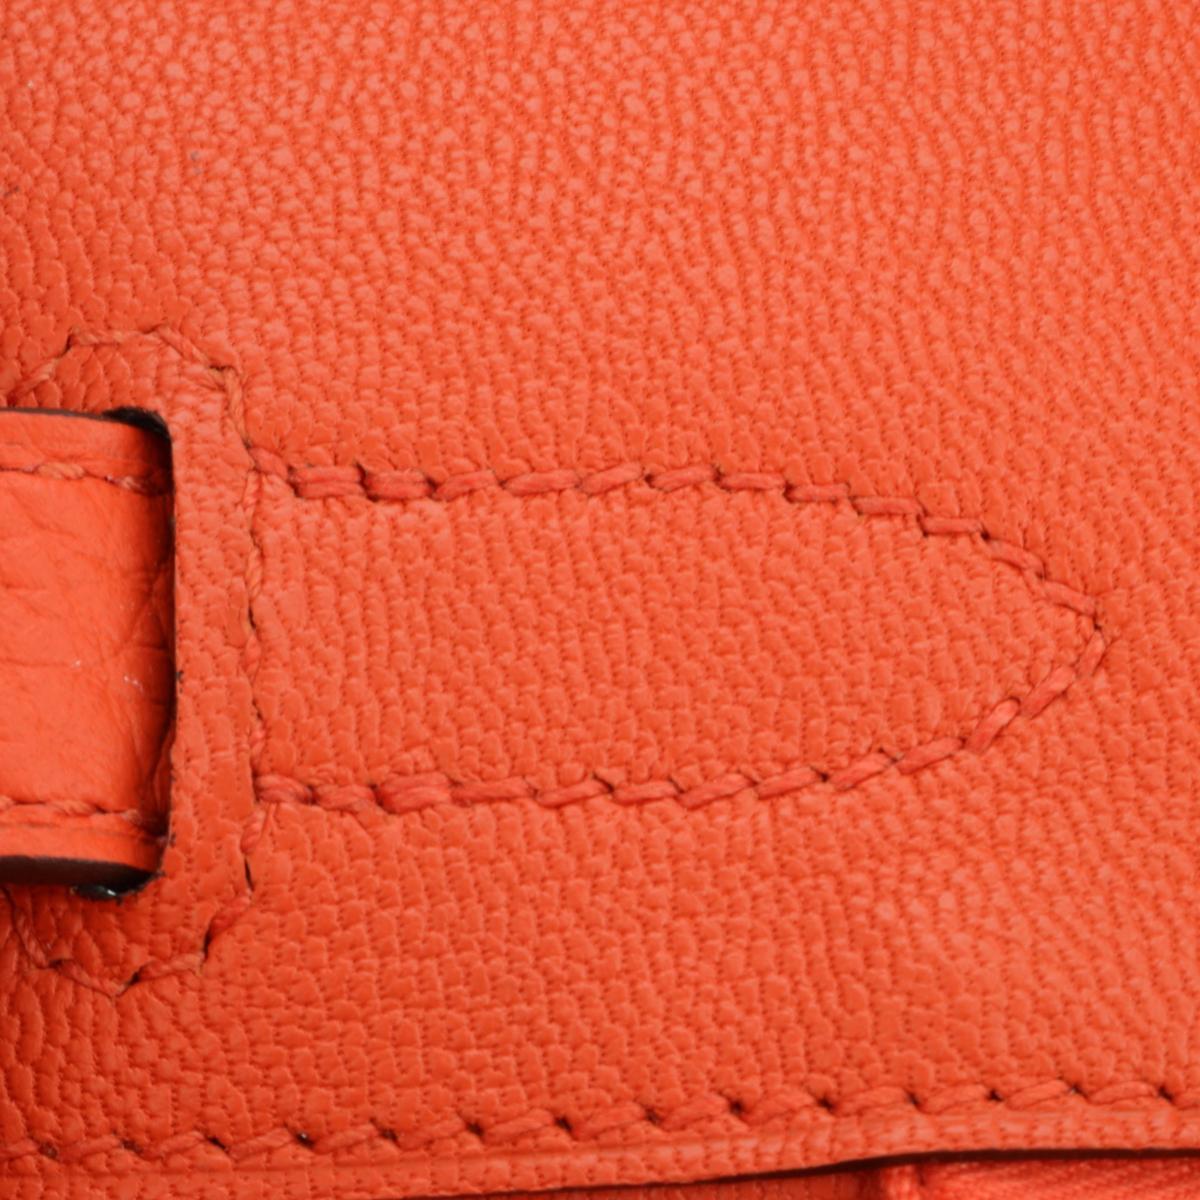 Hermès Birkin Bag 30cm Poppy Orange Togo Leather Palladium Hardware Stamp T 2015 For Sale 12